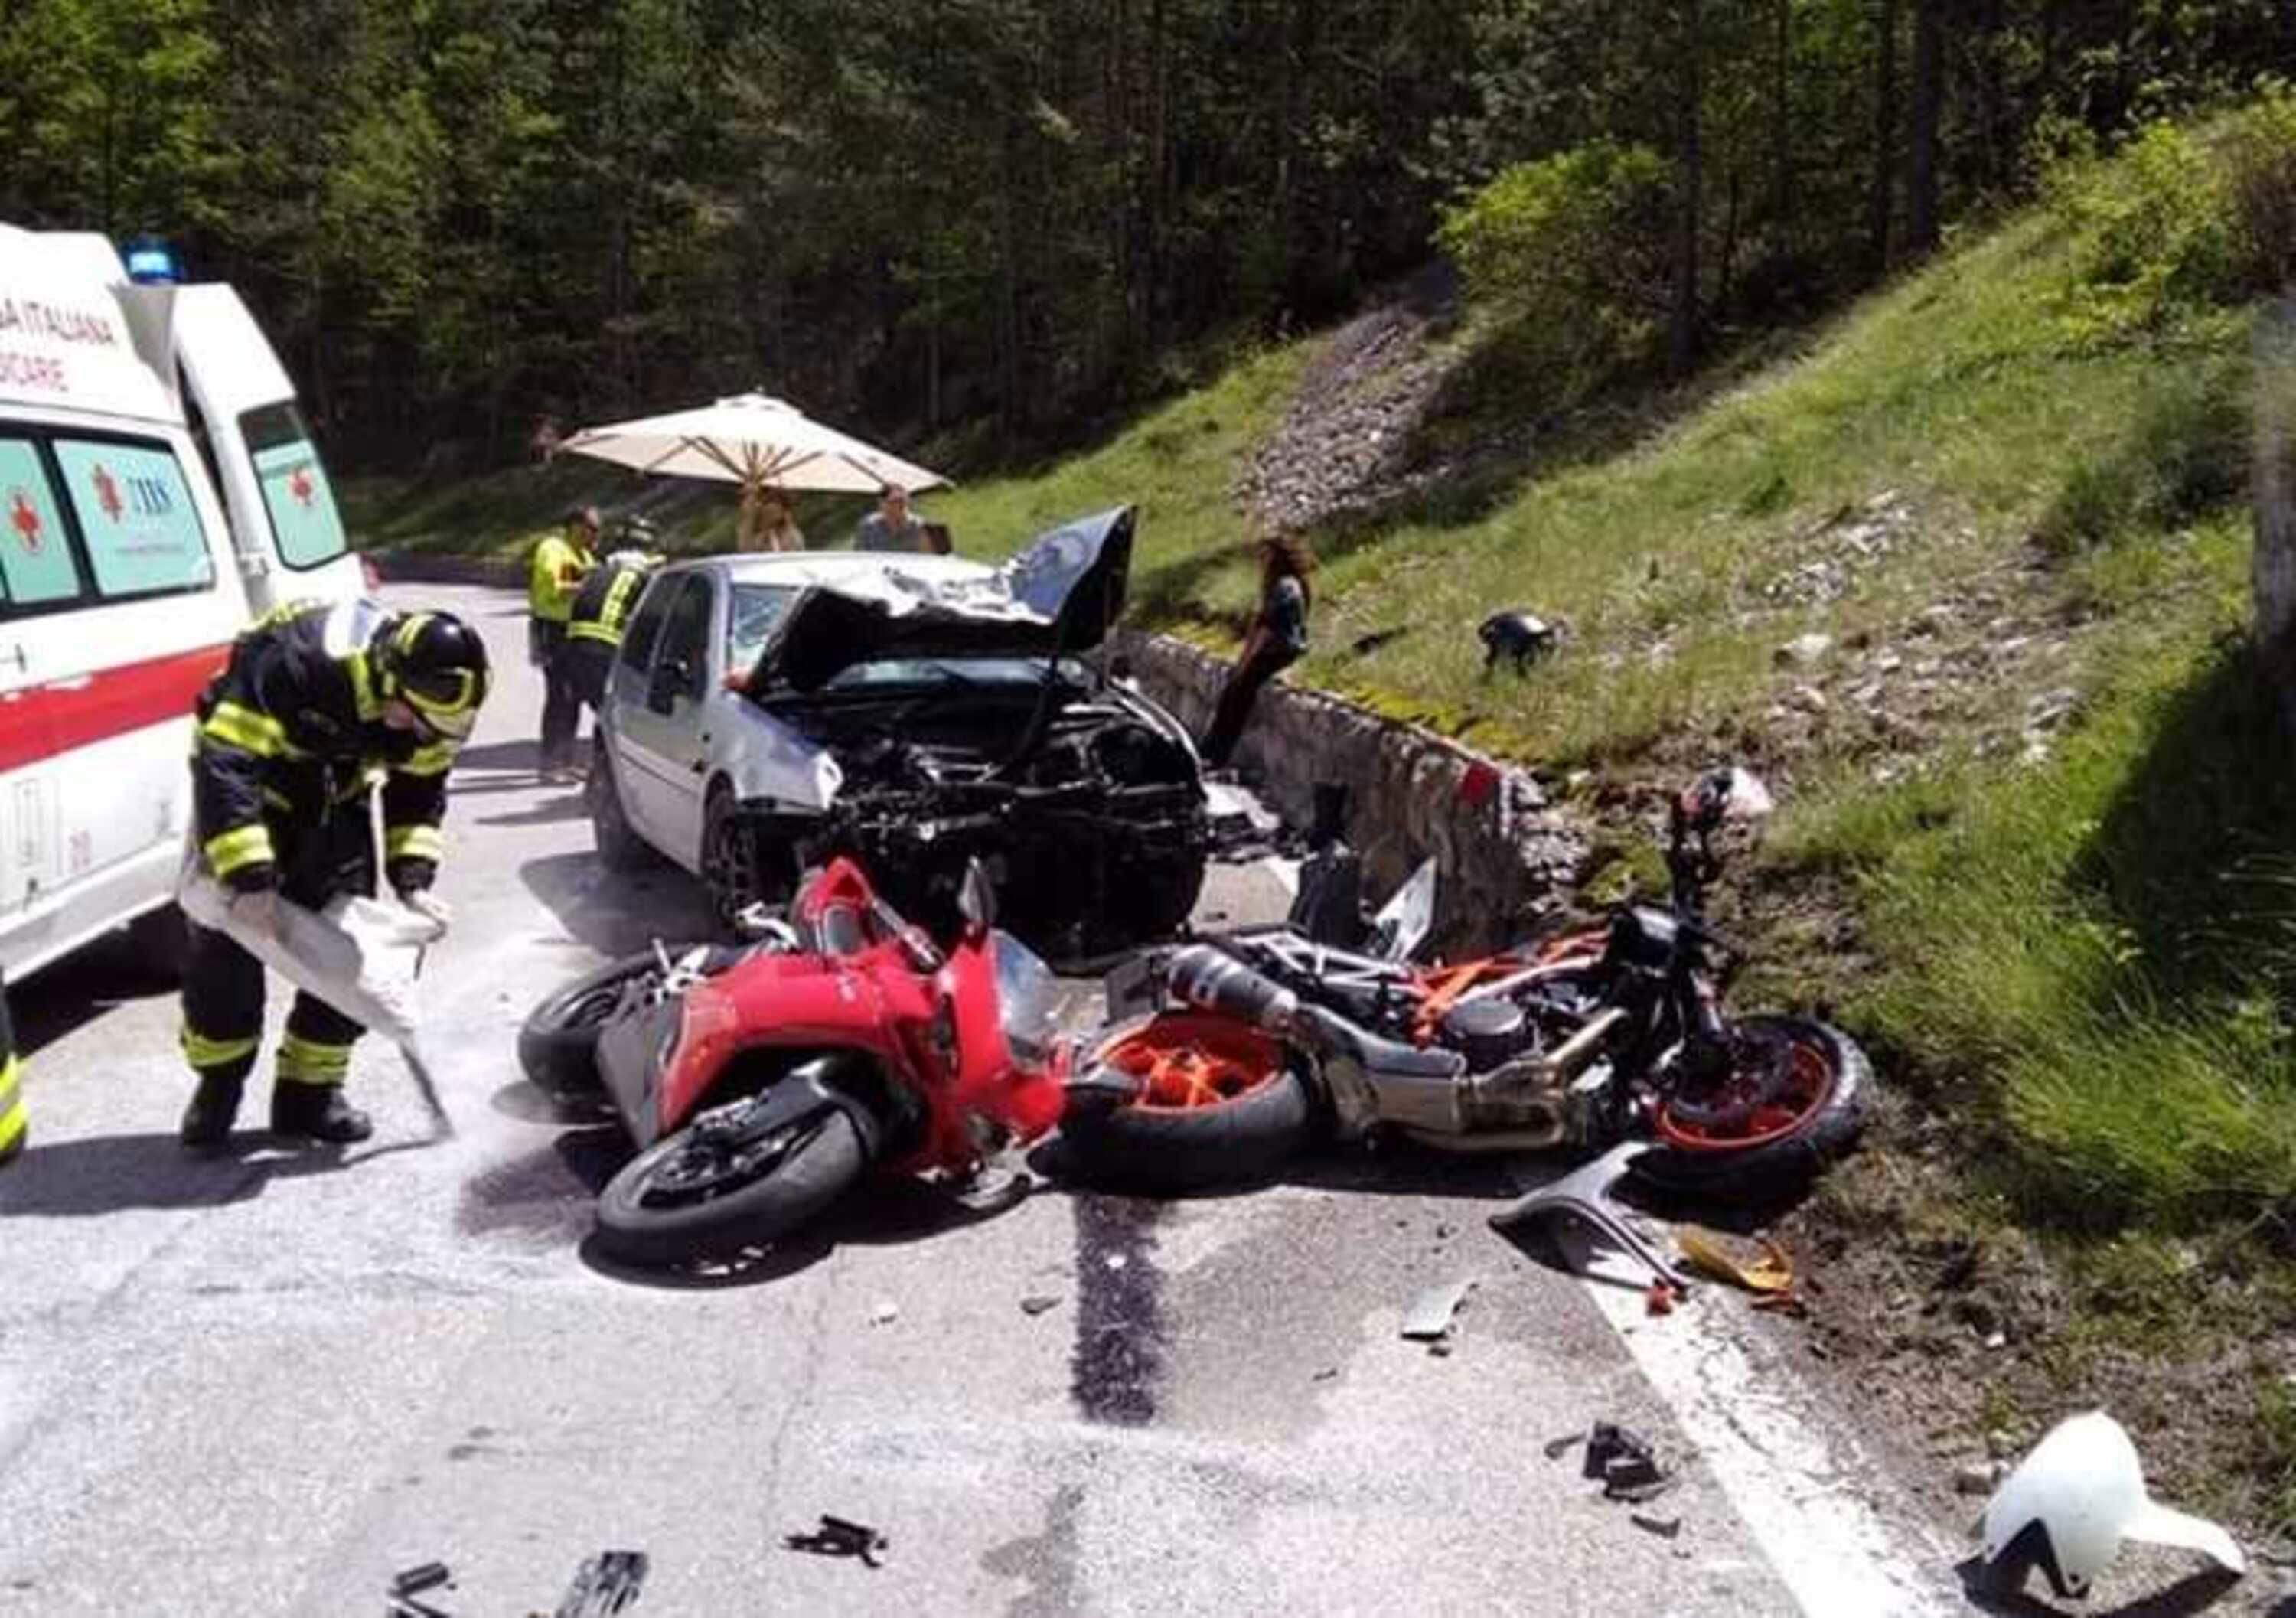 Incidenti in moto: un&rsquo;estate terribile